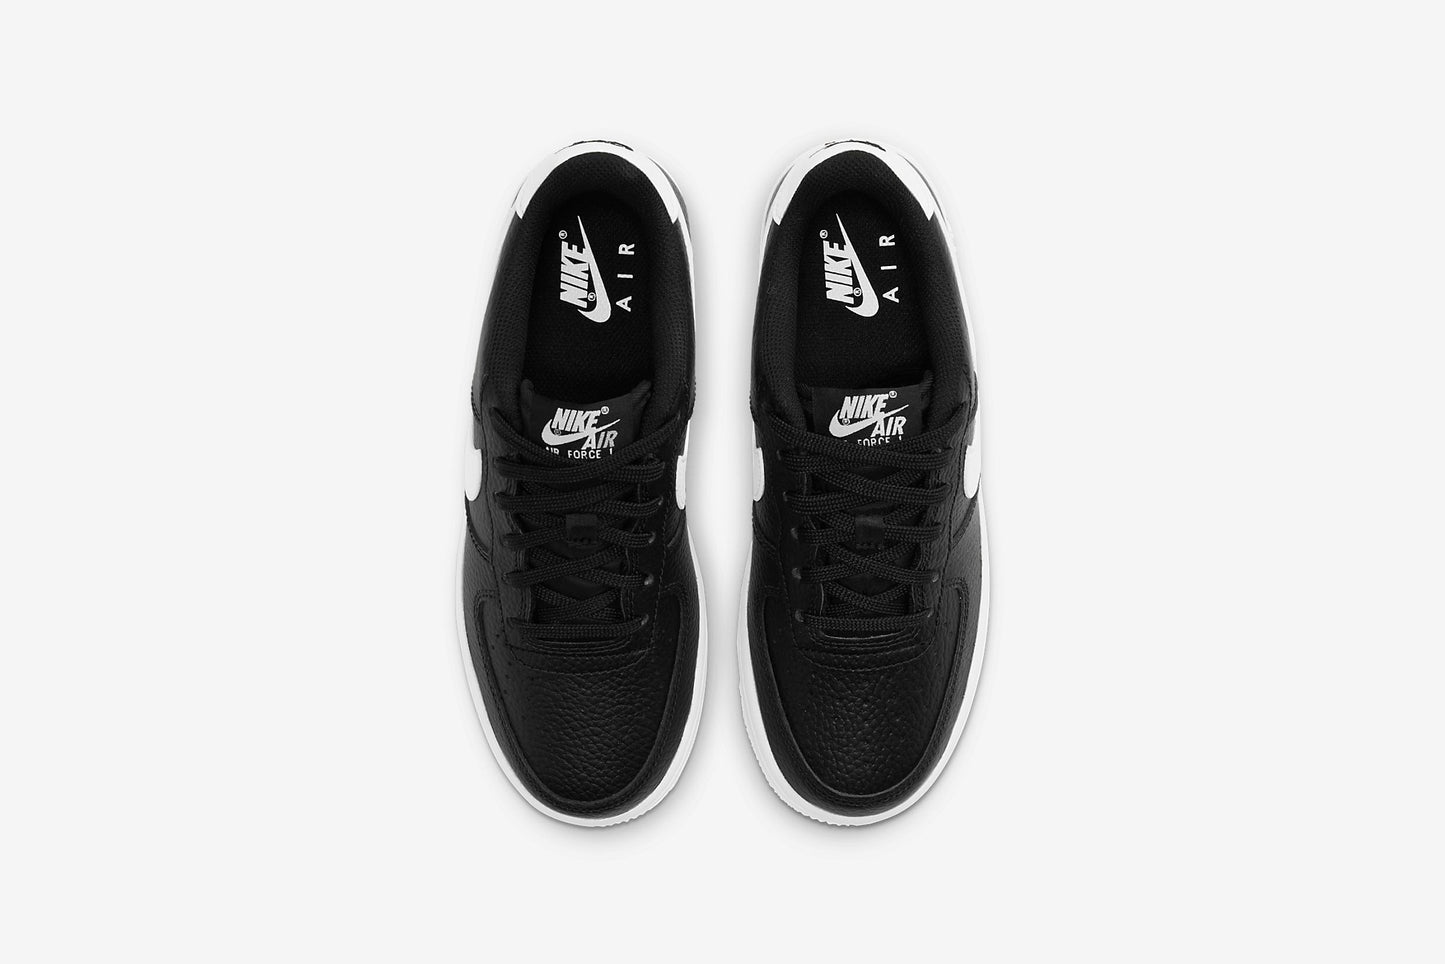 Nike "Air Force 1" GS - Black / White